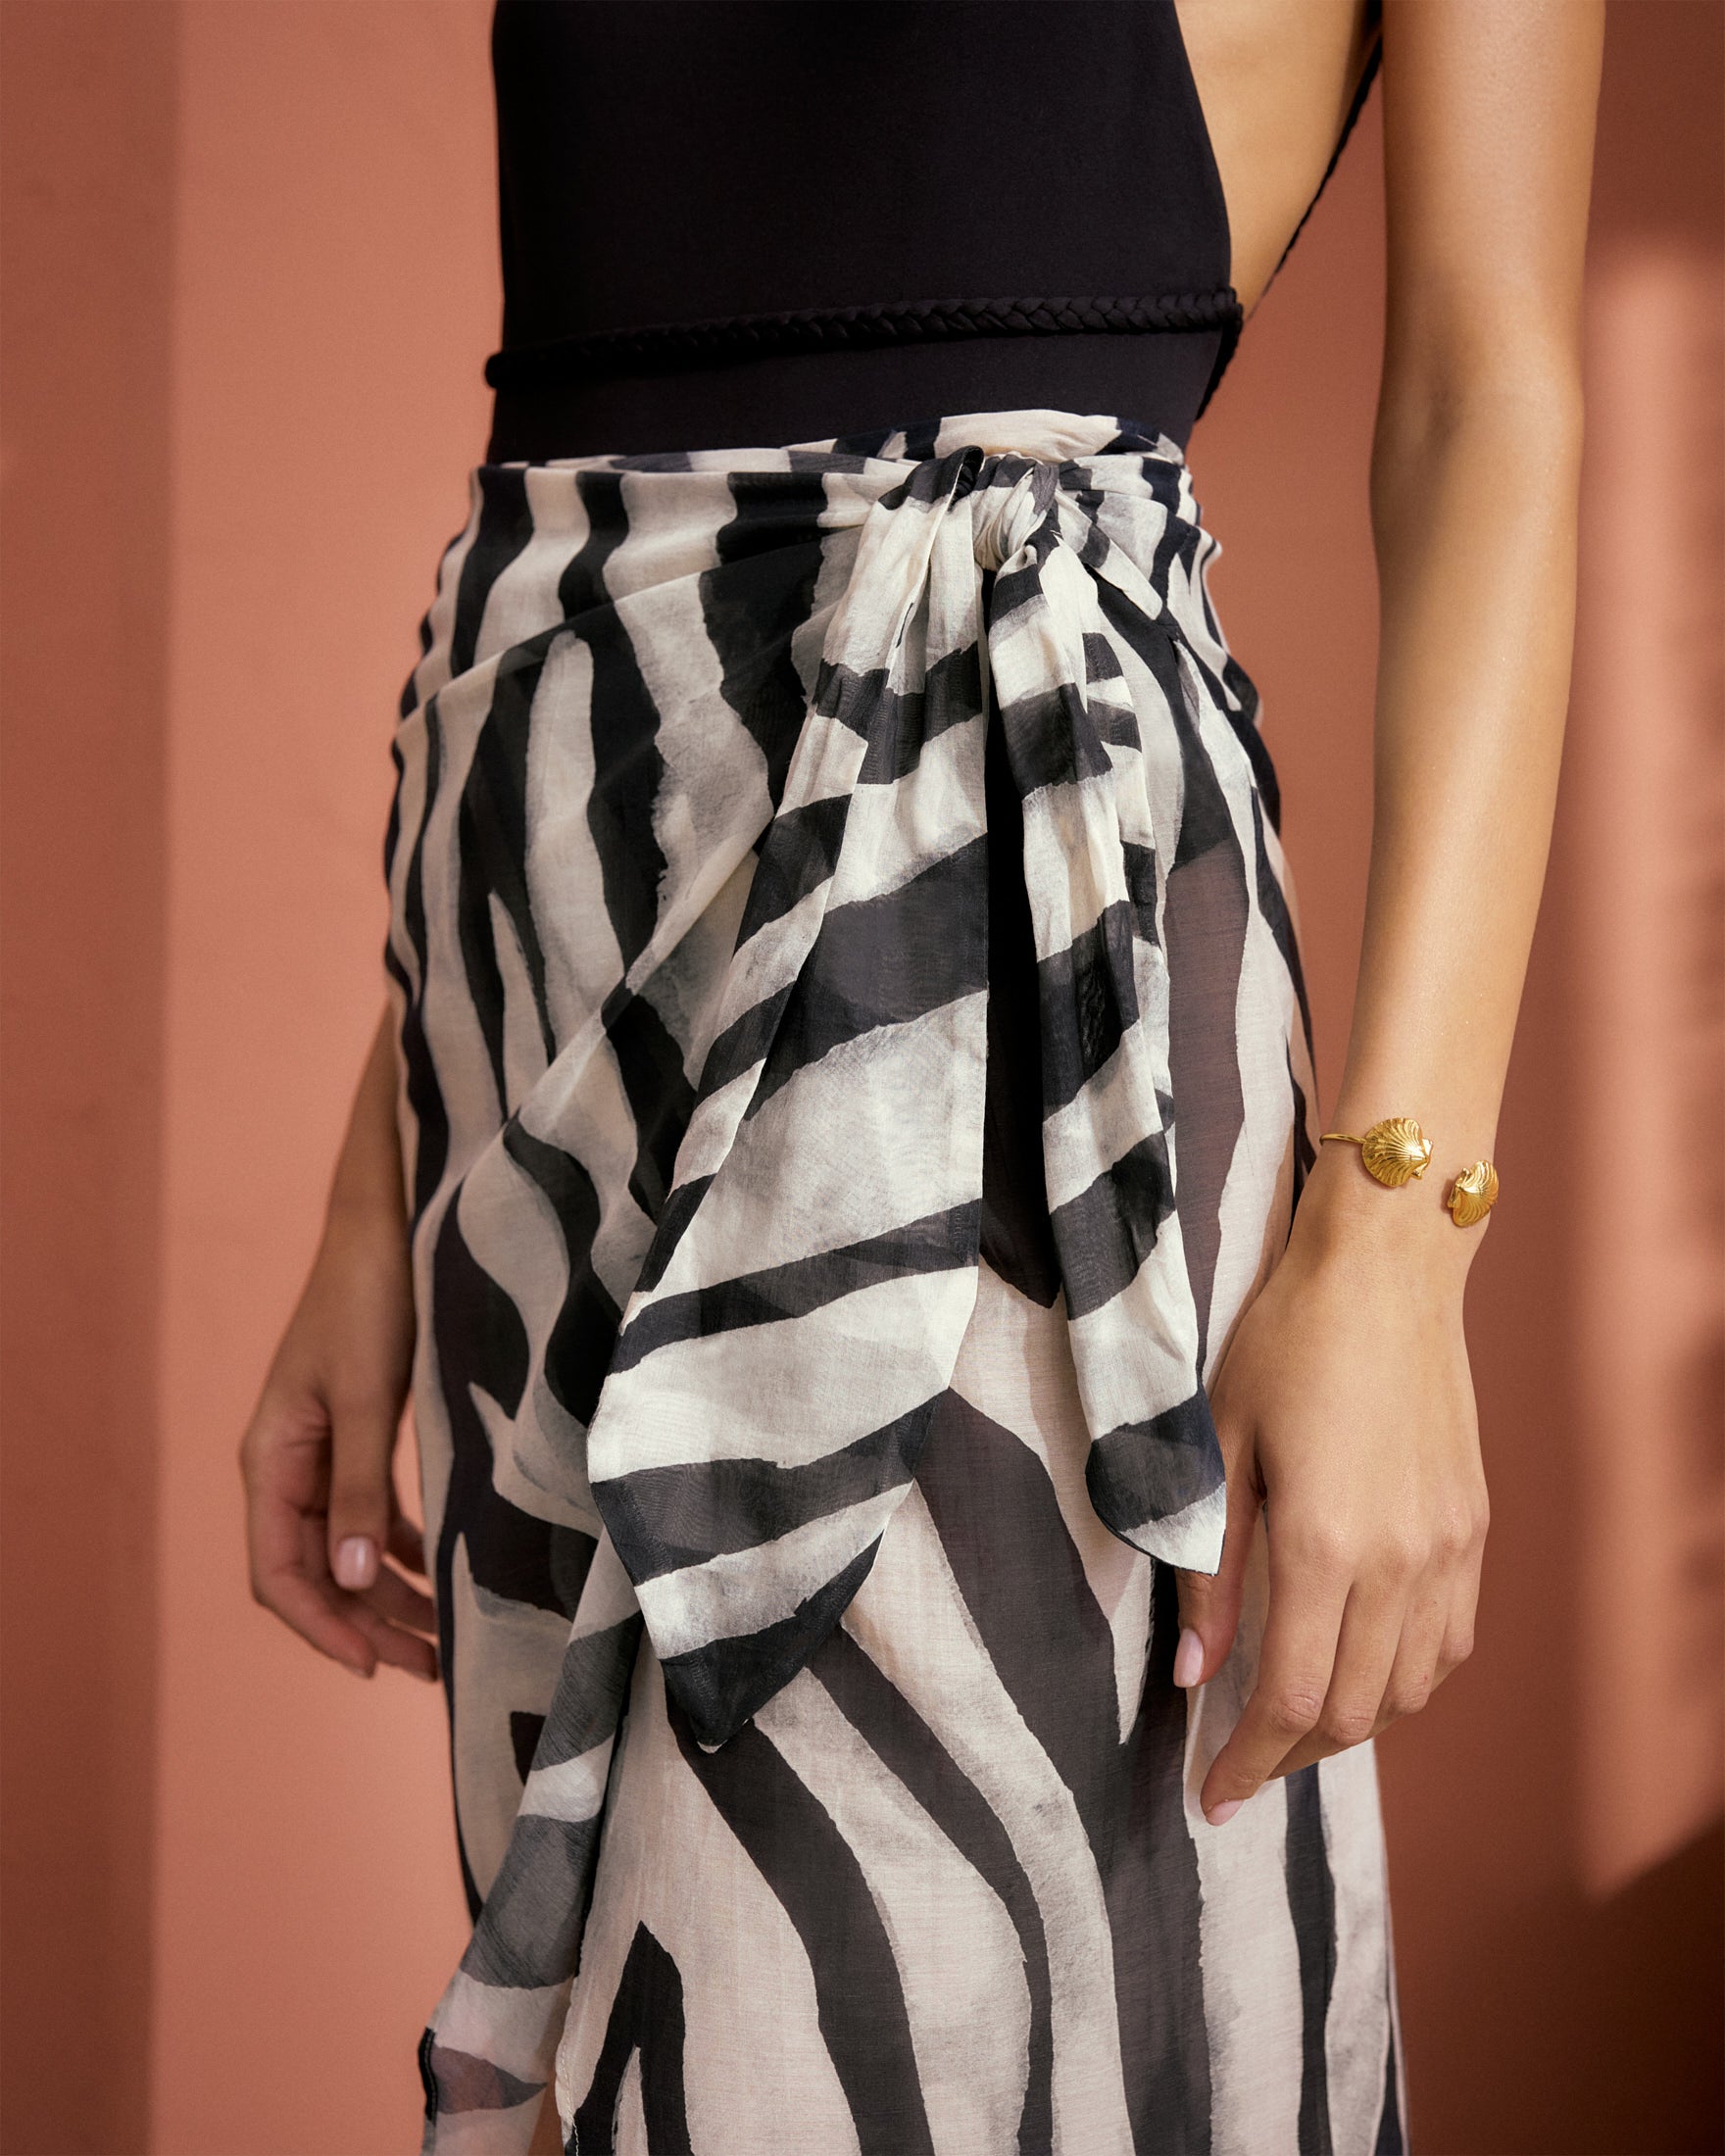 Printed Cotton Silk Voile Lencois Skirt - Wraparound Design With Knot - Black Off White Maxi Zebra